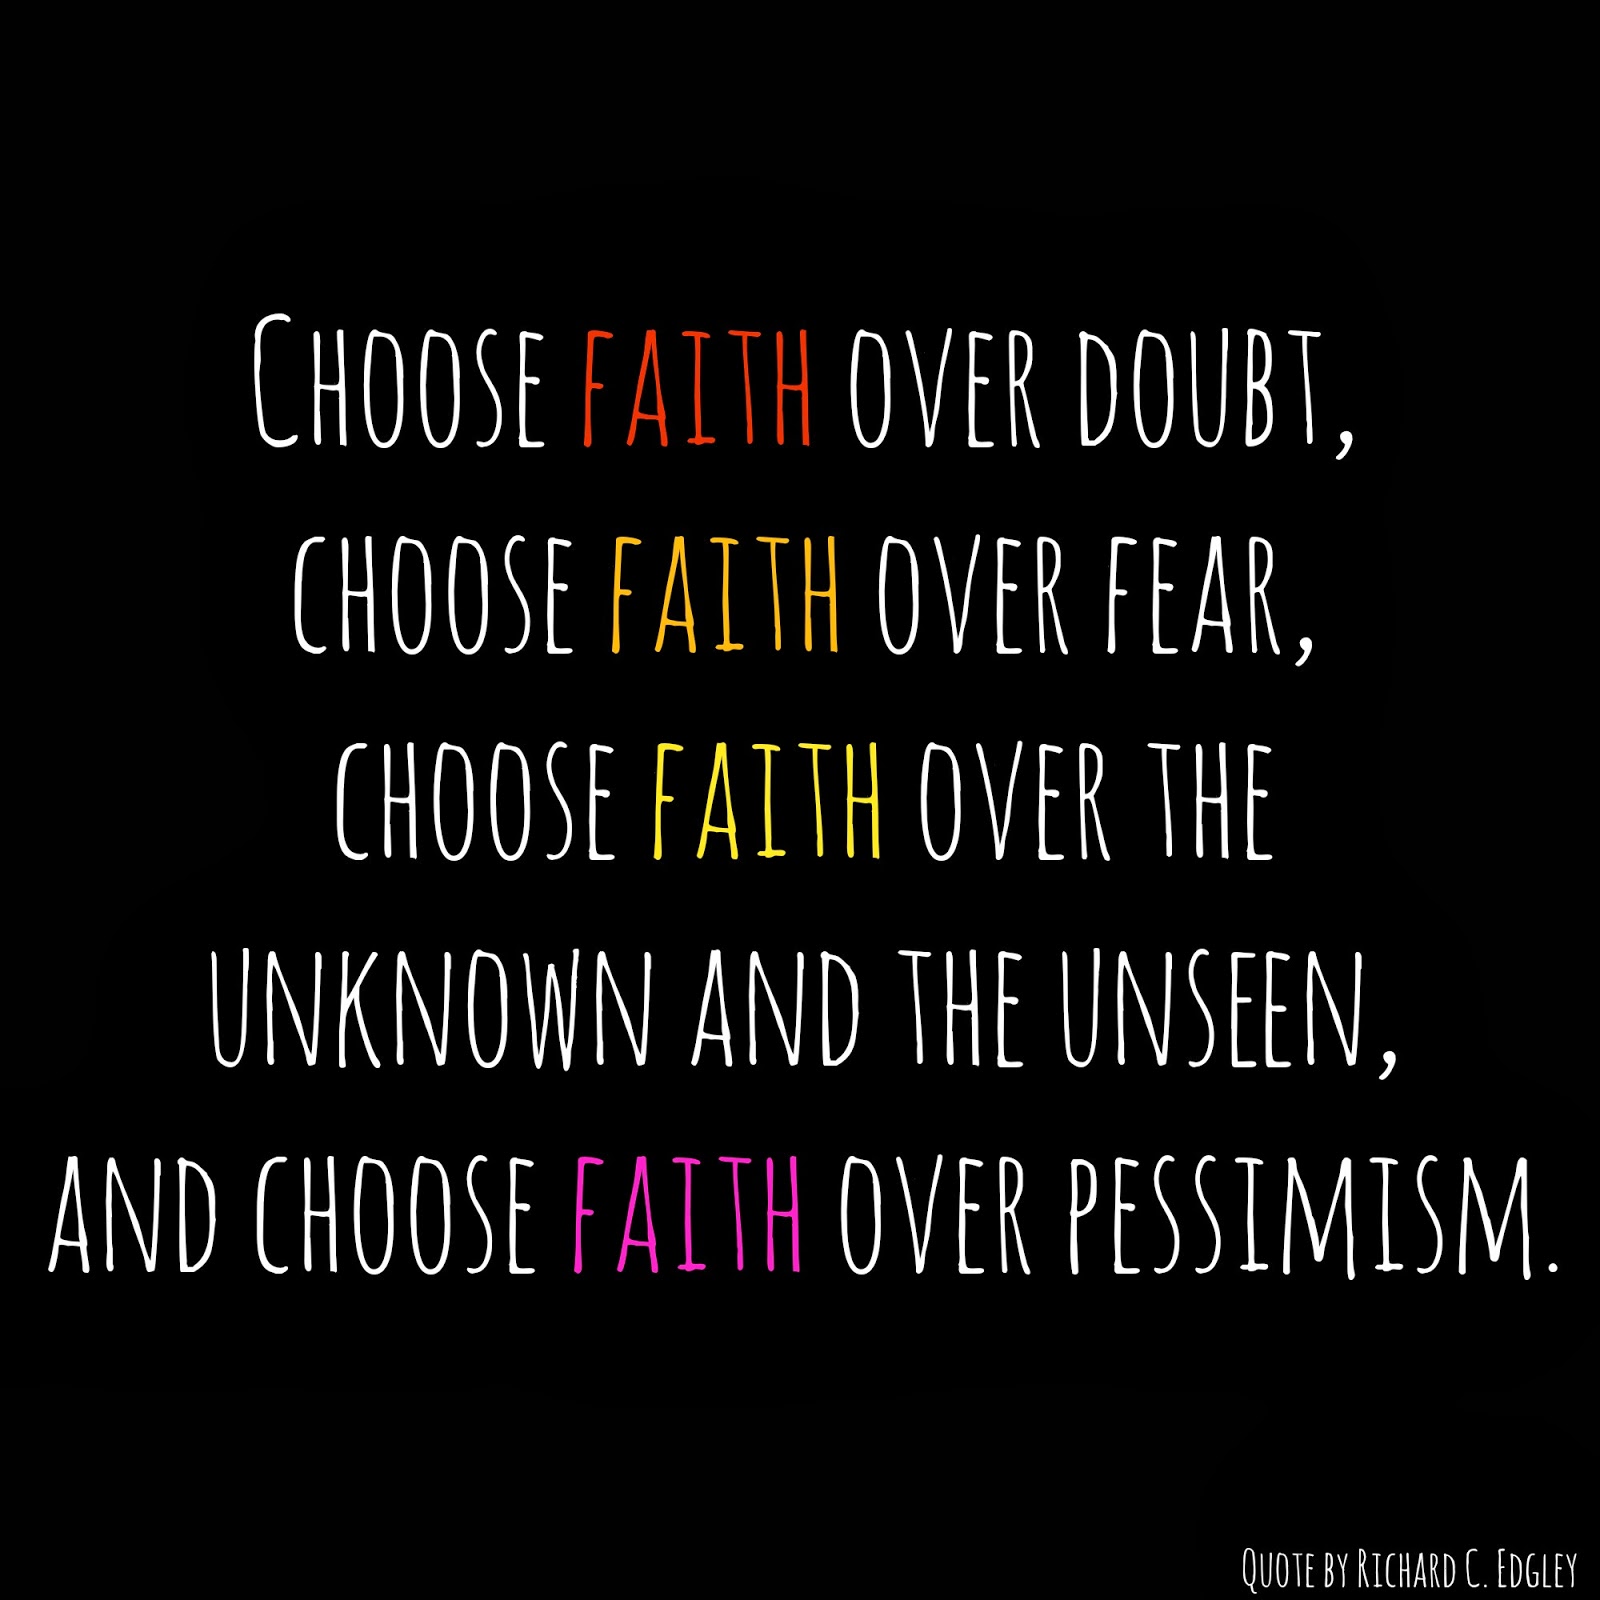 Choose faith over doubt, choose faith over fear, choose faith over the unknown and the unseen, and choose faith over pessimism